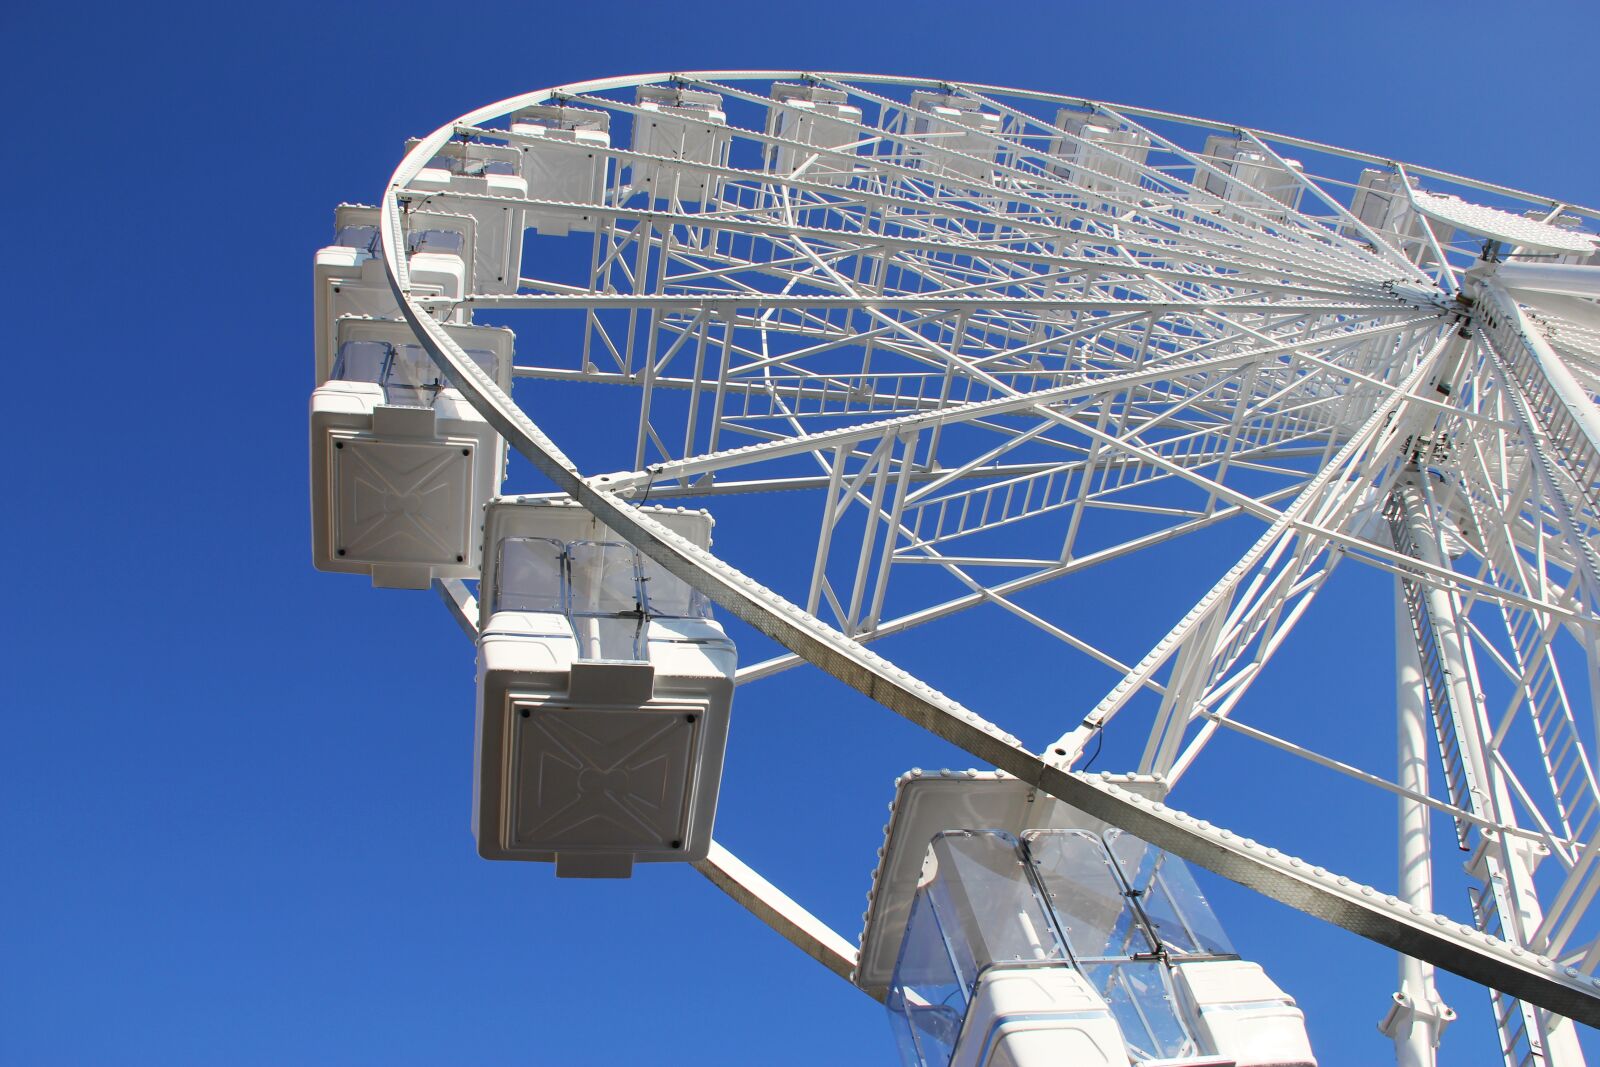 Canon EOS 550D (EOS Rebel T2i / EOS Kiss X4) sample photo. Ferris wheel, fairground, entertainment photography